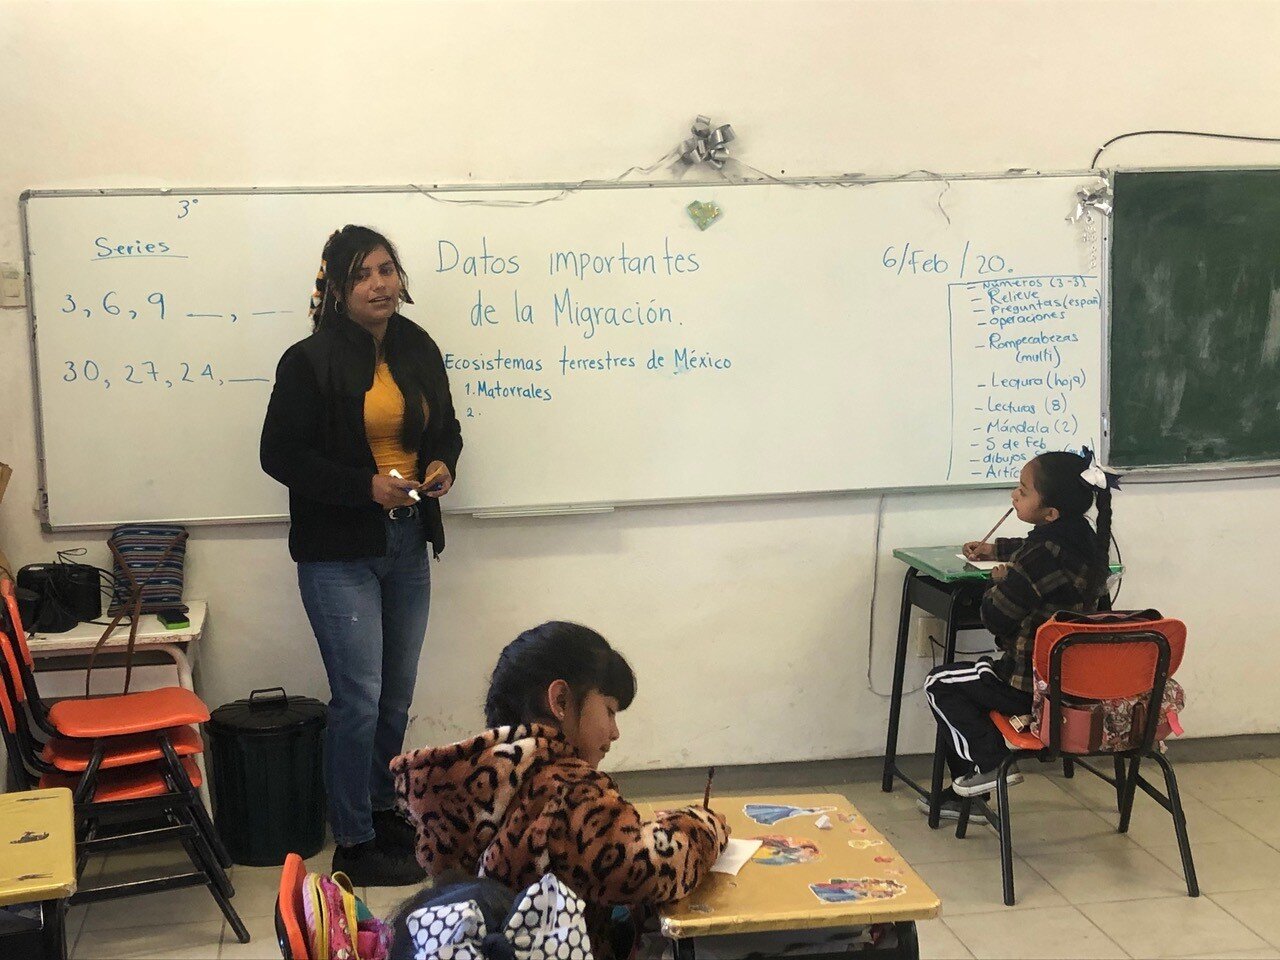  Paola Rangel enseña a los alumnos de segundo grado en San Franco sobre los ecosistemas en México utilizados por las aves migratorias. El proyecto de hermanamiento apoya la educación en ciencias naturales en 5 pares de escuelas "hermanadas" en las cu